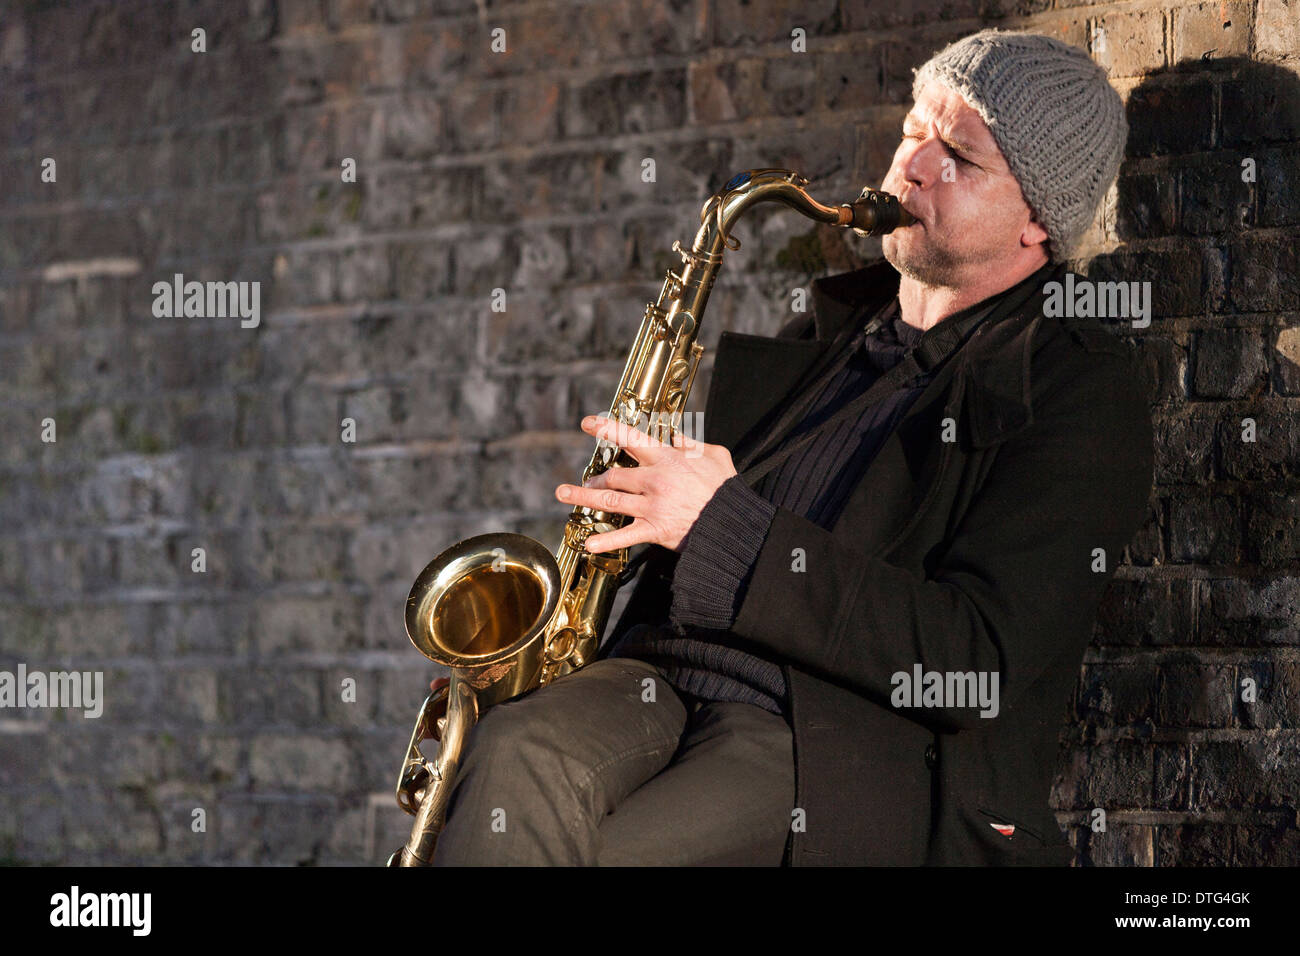 Musicien ambulant de la rue / street player / saxophoniste jouant du saxophone dans le cadre de la brique arch à Twickenham, Londres. UK. Banque D'Images